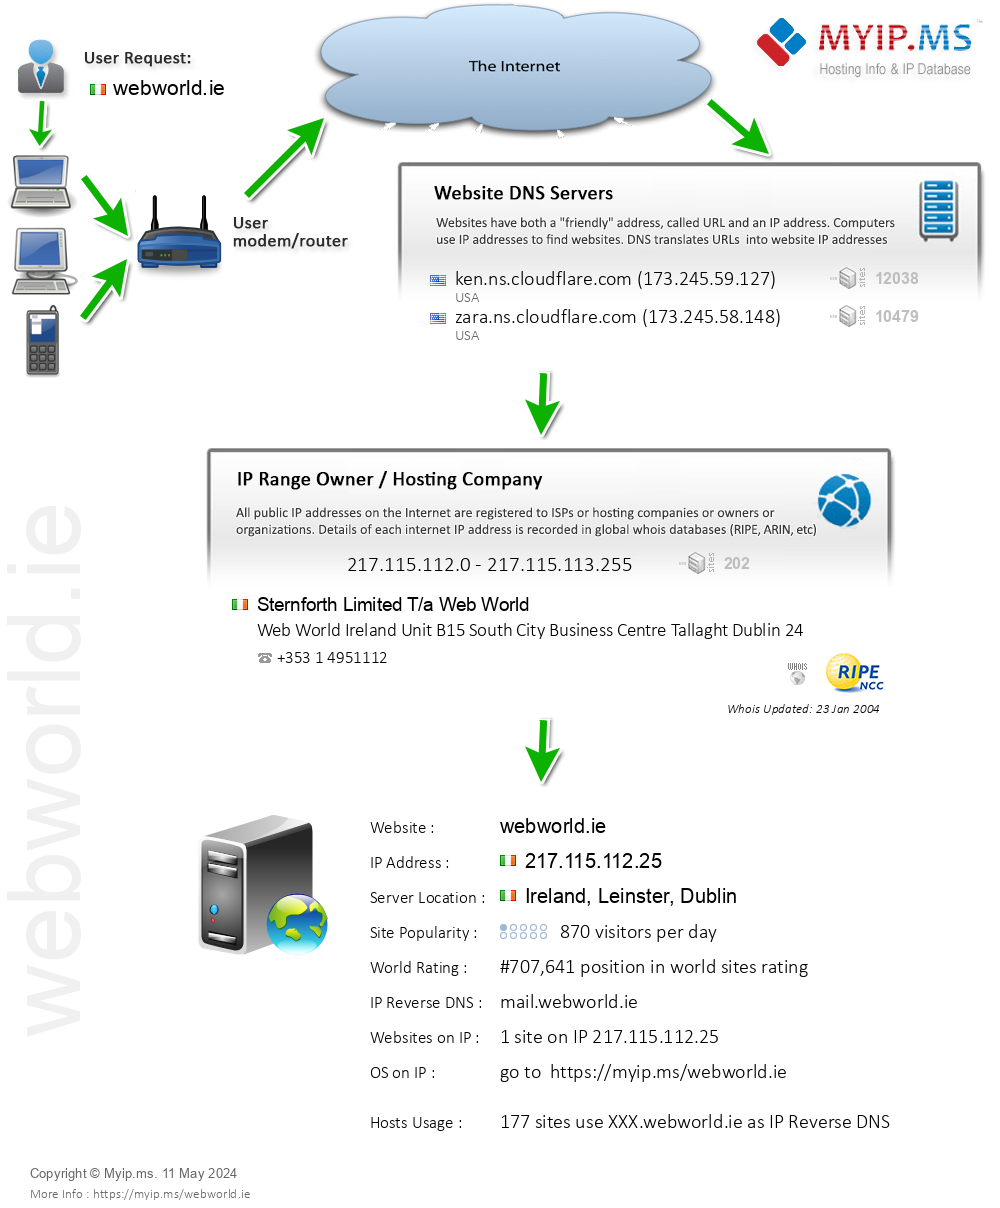 Webworld.ie - Website Hosting Visual IP Diagram